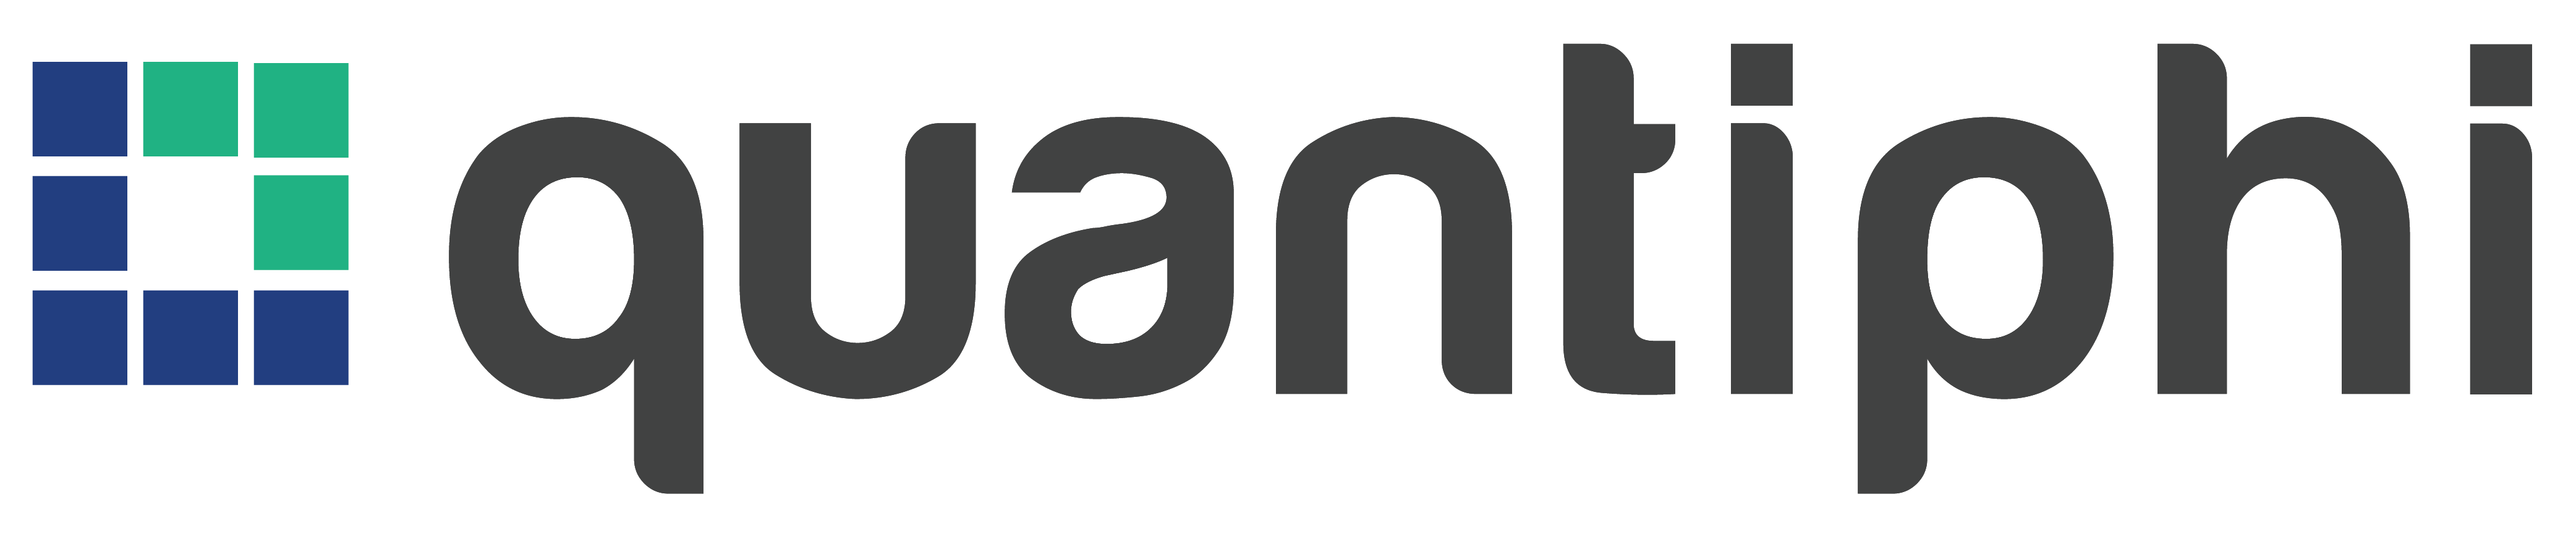 Logotipo de Quantiphi